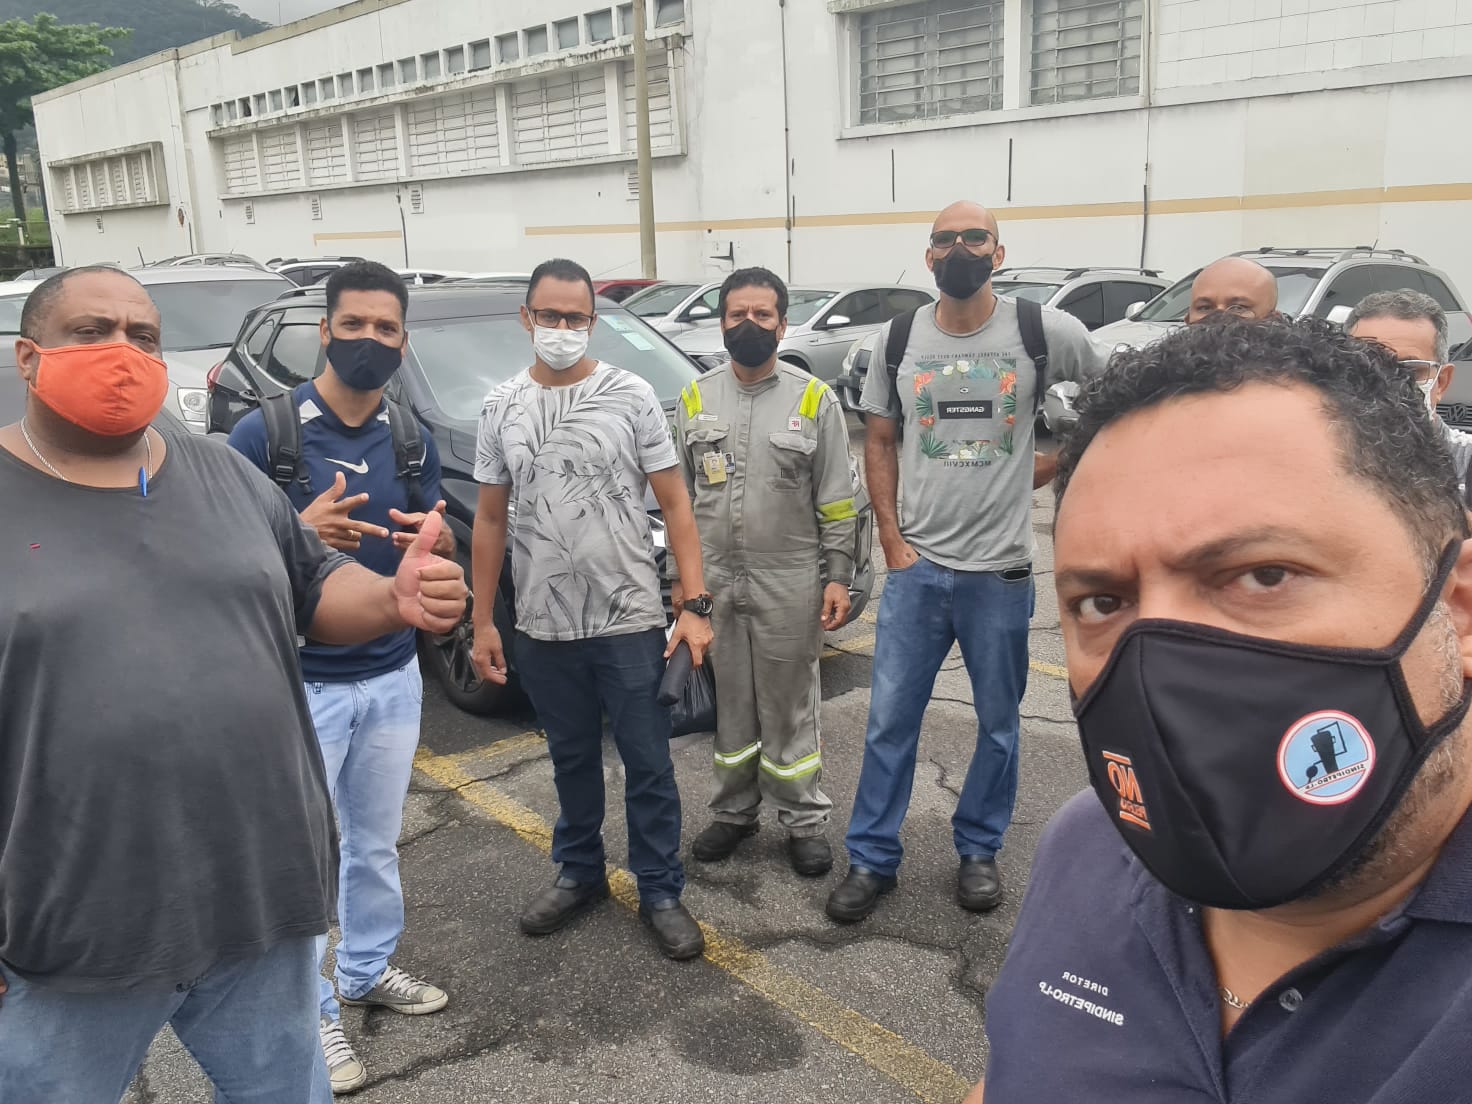 Gata promove calote na Refinaria Presidente Bernardes (RPBC), em Cubatão, e deixa trabalhadores à mingua 